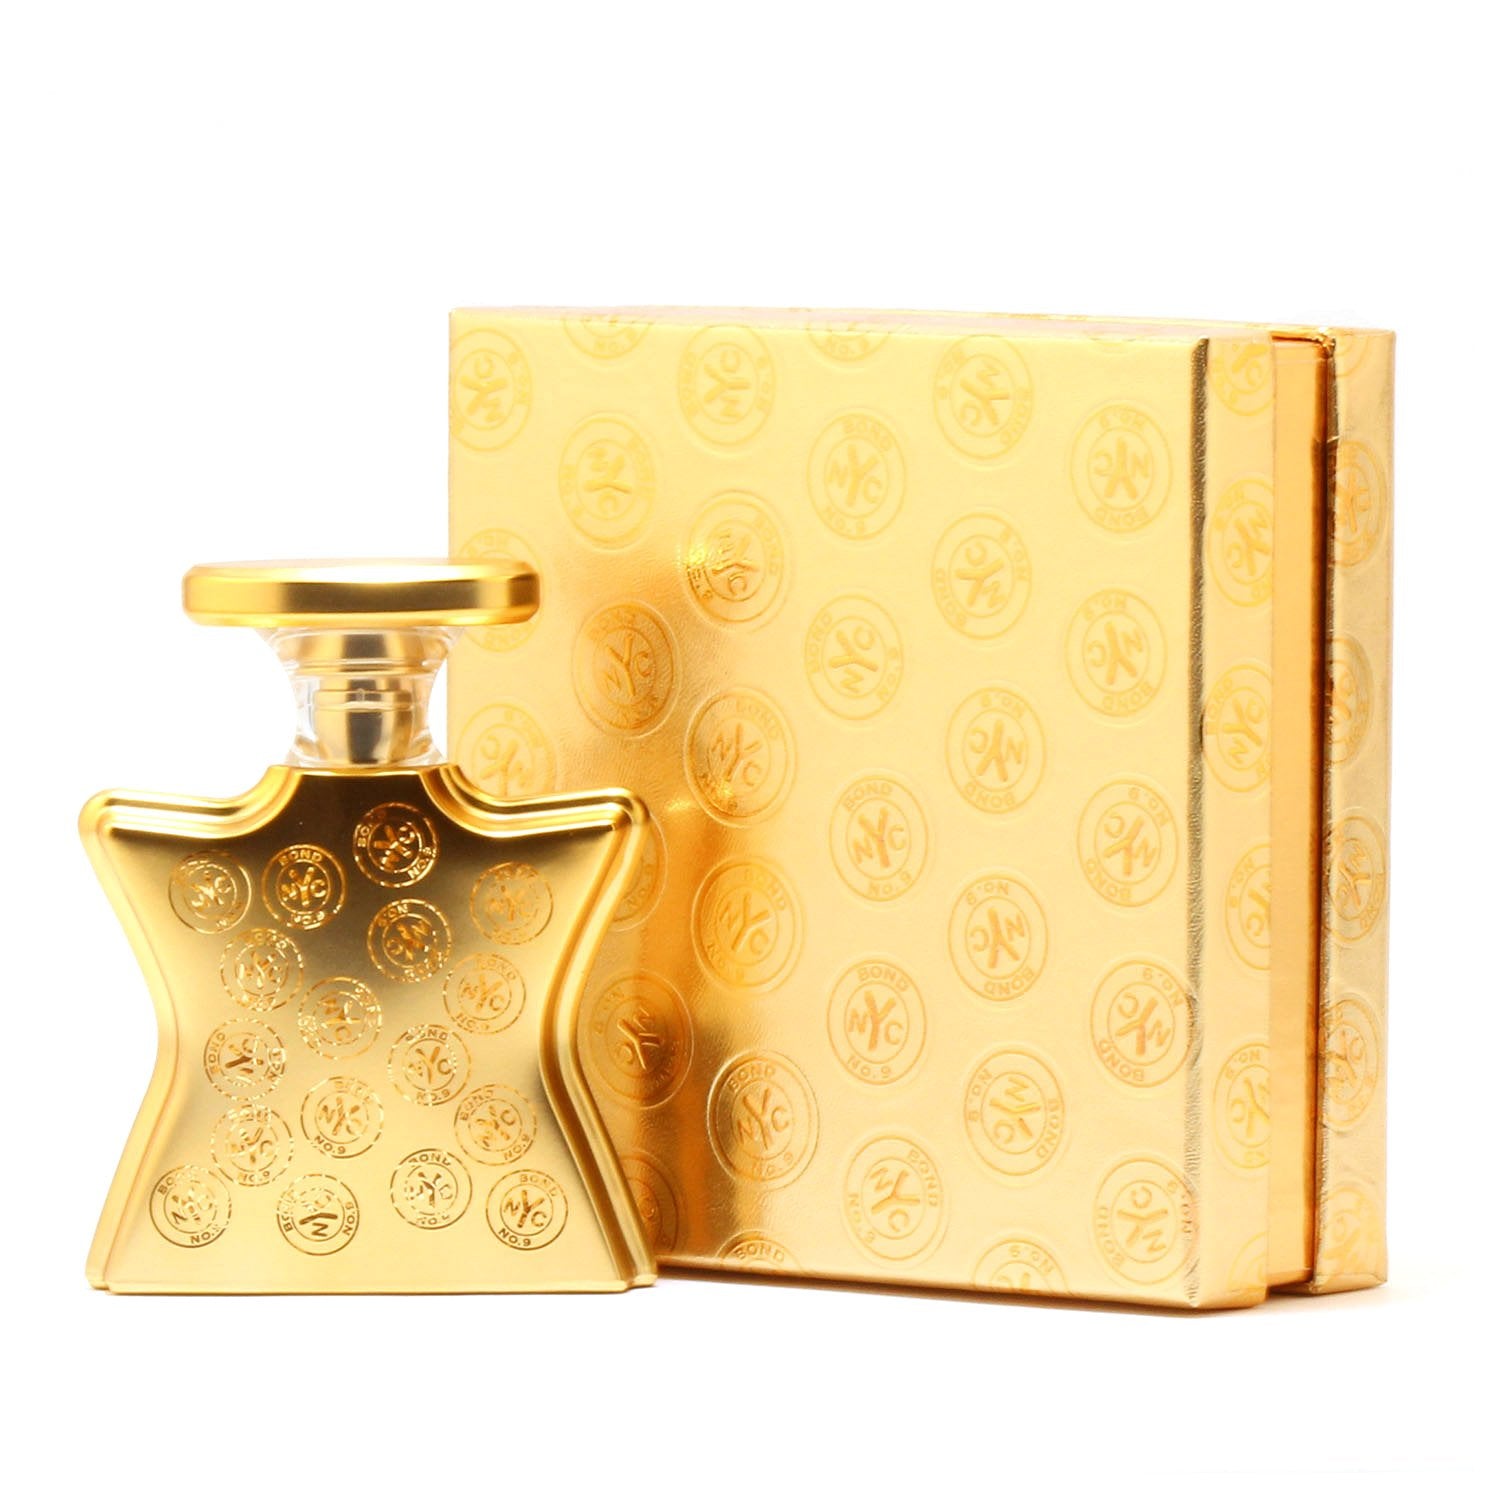 Perfume - BOND NO 9 NEW YORK SIGNATURE SCENT UNISEX - EAU DE PARFUM SPRAY, 1.7 OZ